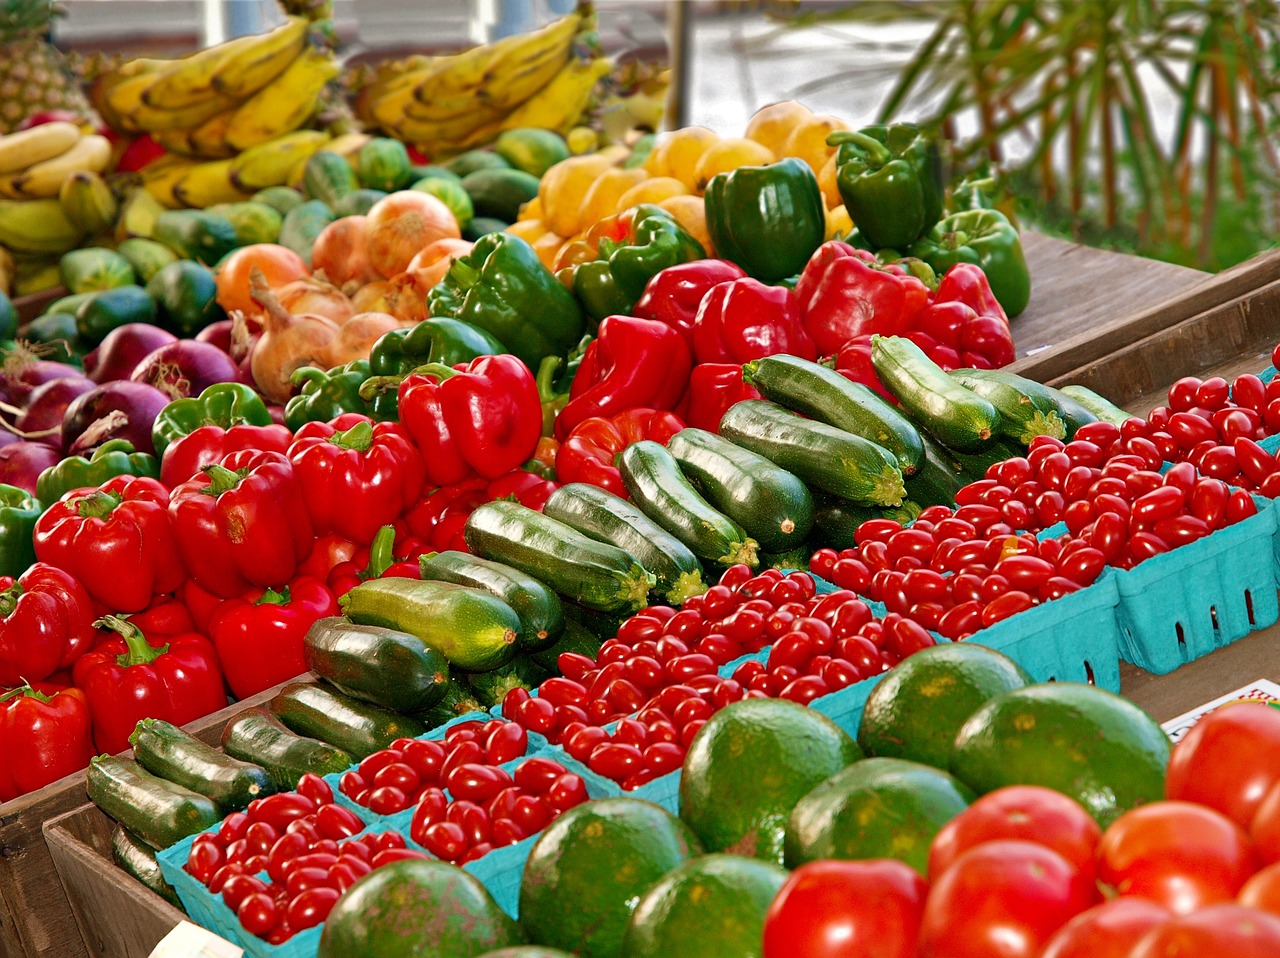 Le Conseil d'Etat annule le décret interdisant les emballages plastiques pour fruits et légumes